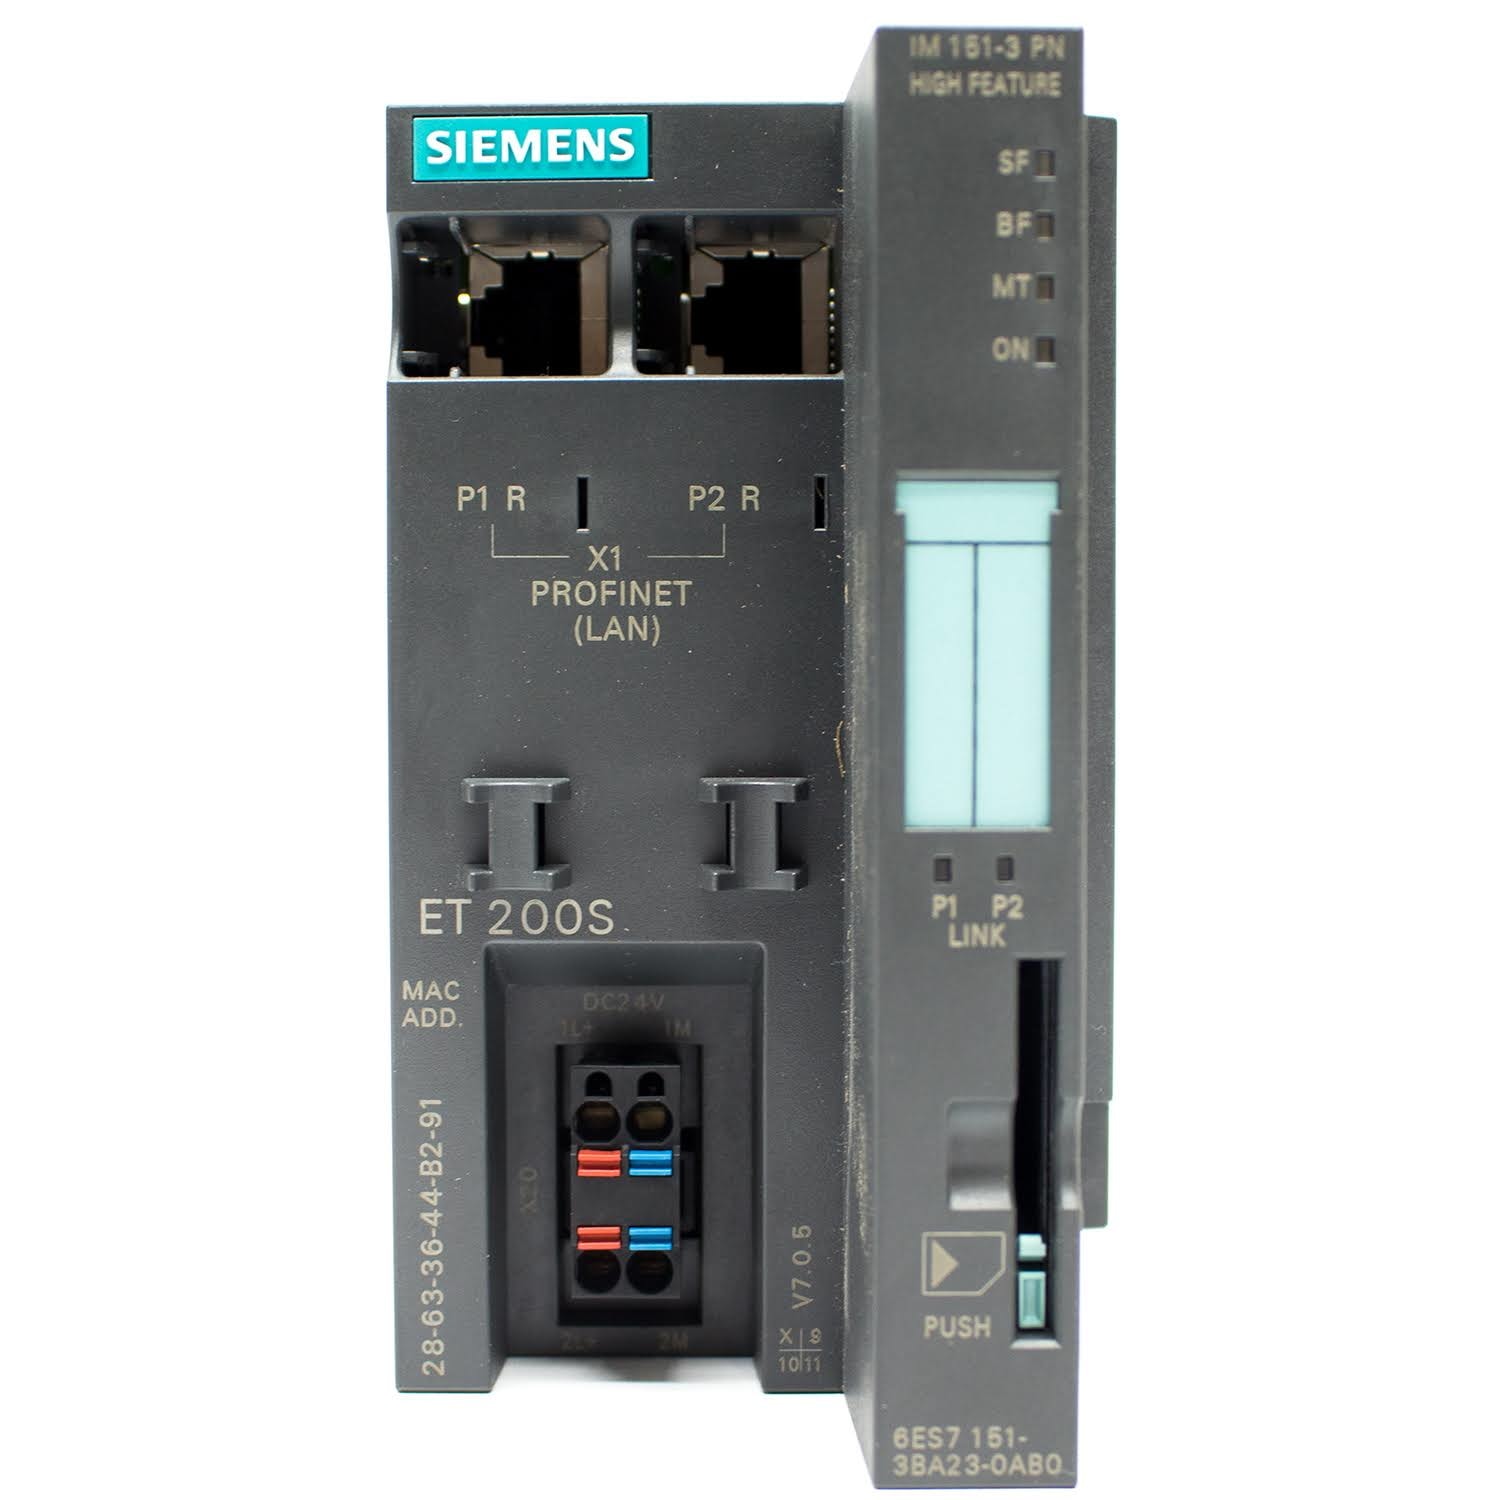 Siemens Simatic S7 IM151-3 PN High Feature 6ES7151-3BA22-0AB0 